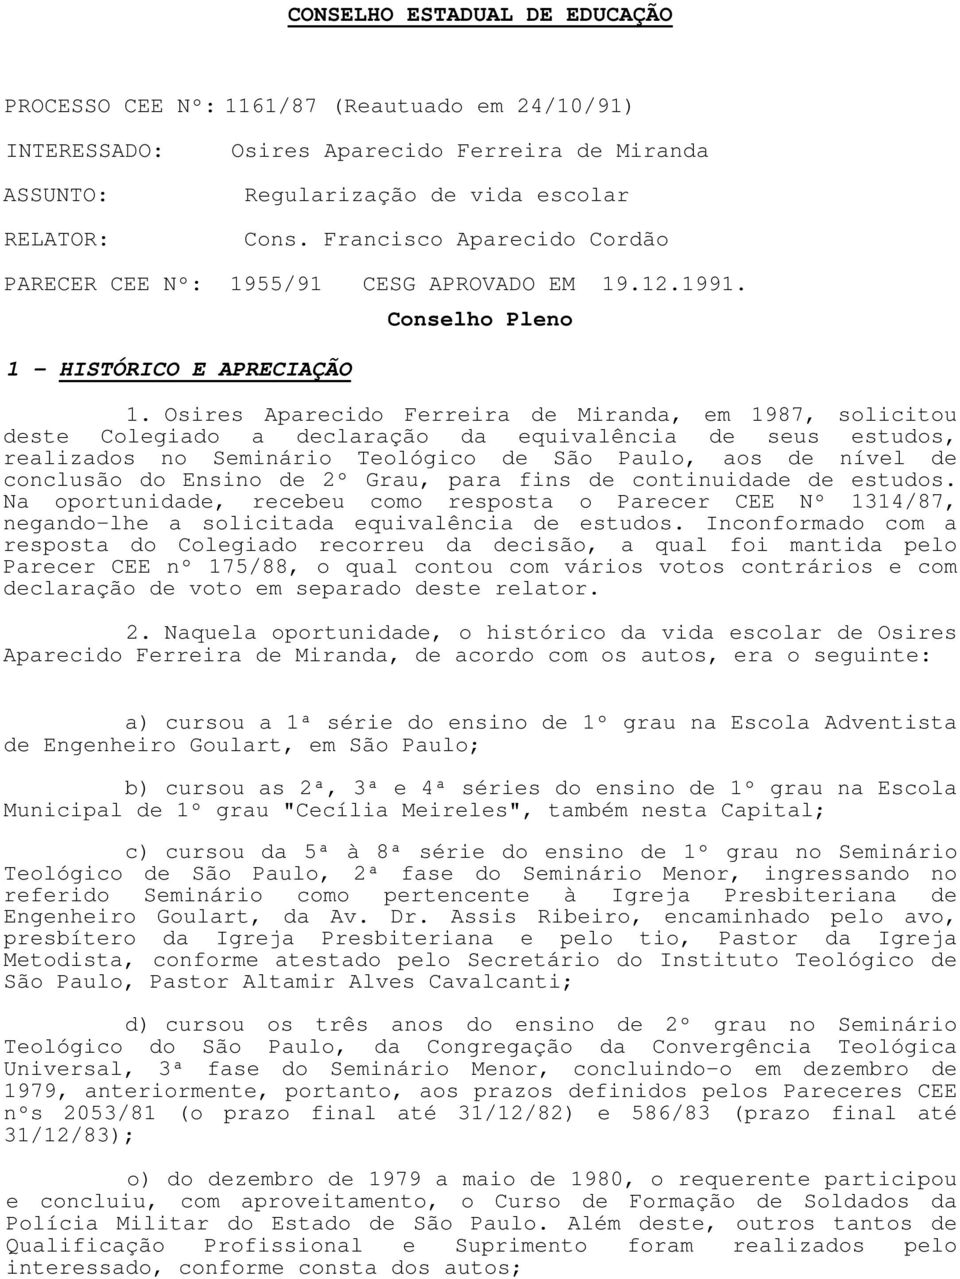 Osires Aparecido Ferreira de Miranda, em 1987, solicitou deste Colegiado a declaração da equivalência de seus estudos, realizados no Seminário Teológico de São Paulo, aos de nível de conclusão do